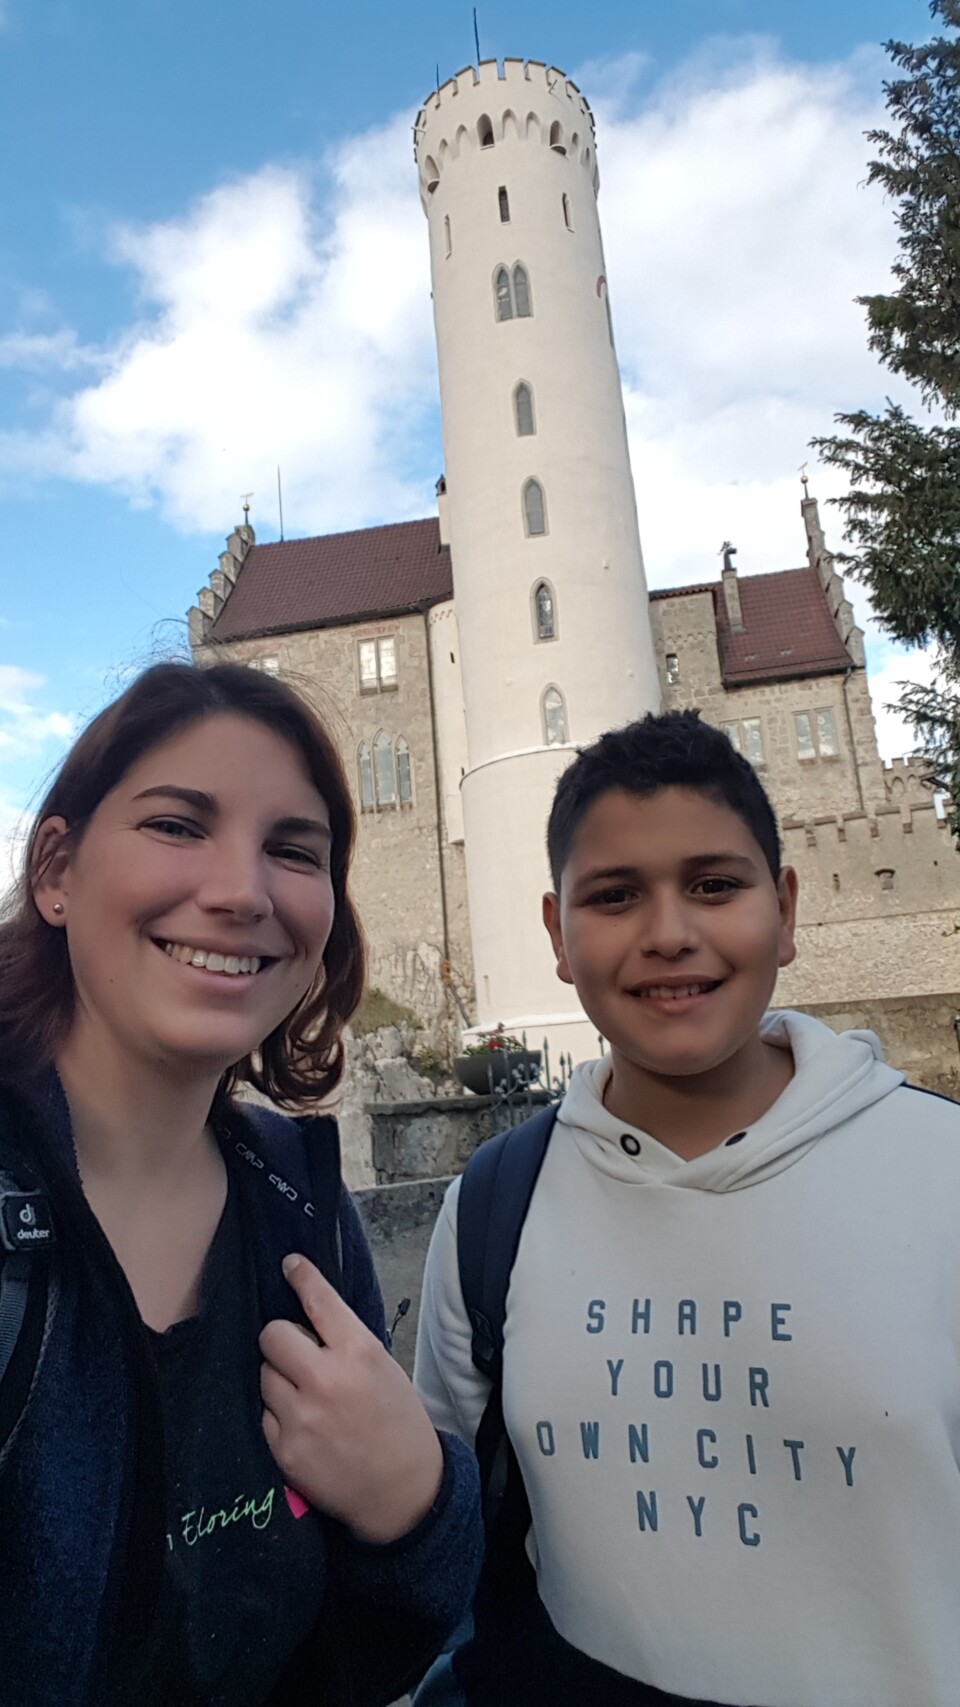 Selfie von links Stefanie und rechts Elias vor dem Schloss Lichtenstein, Foto: Stefanie